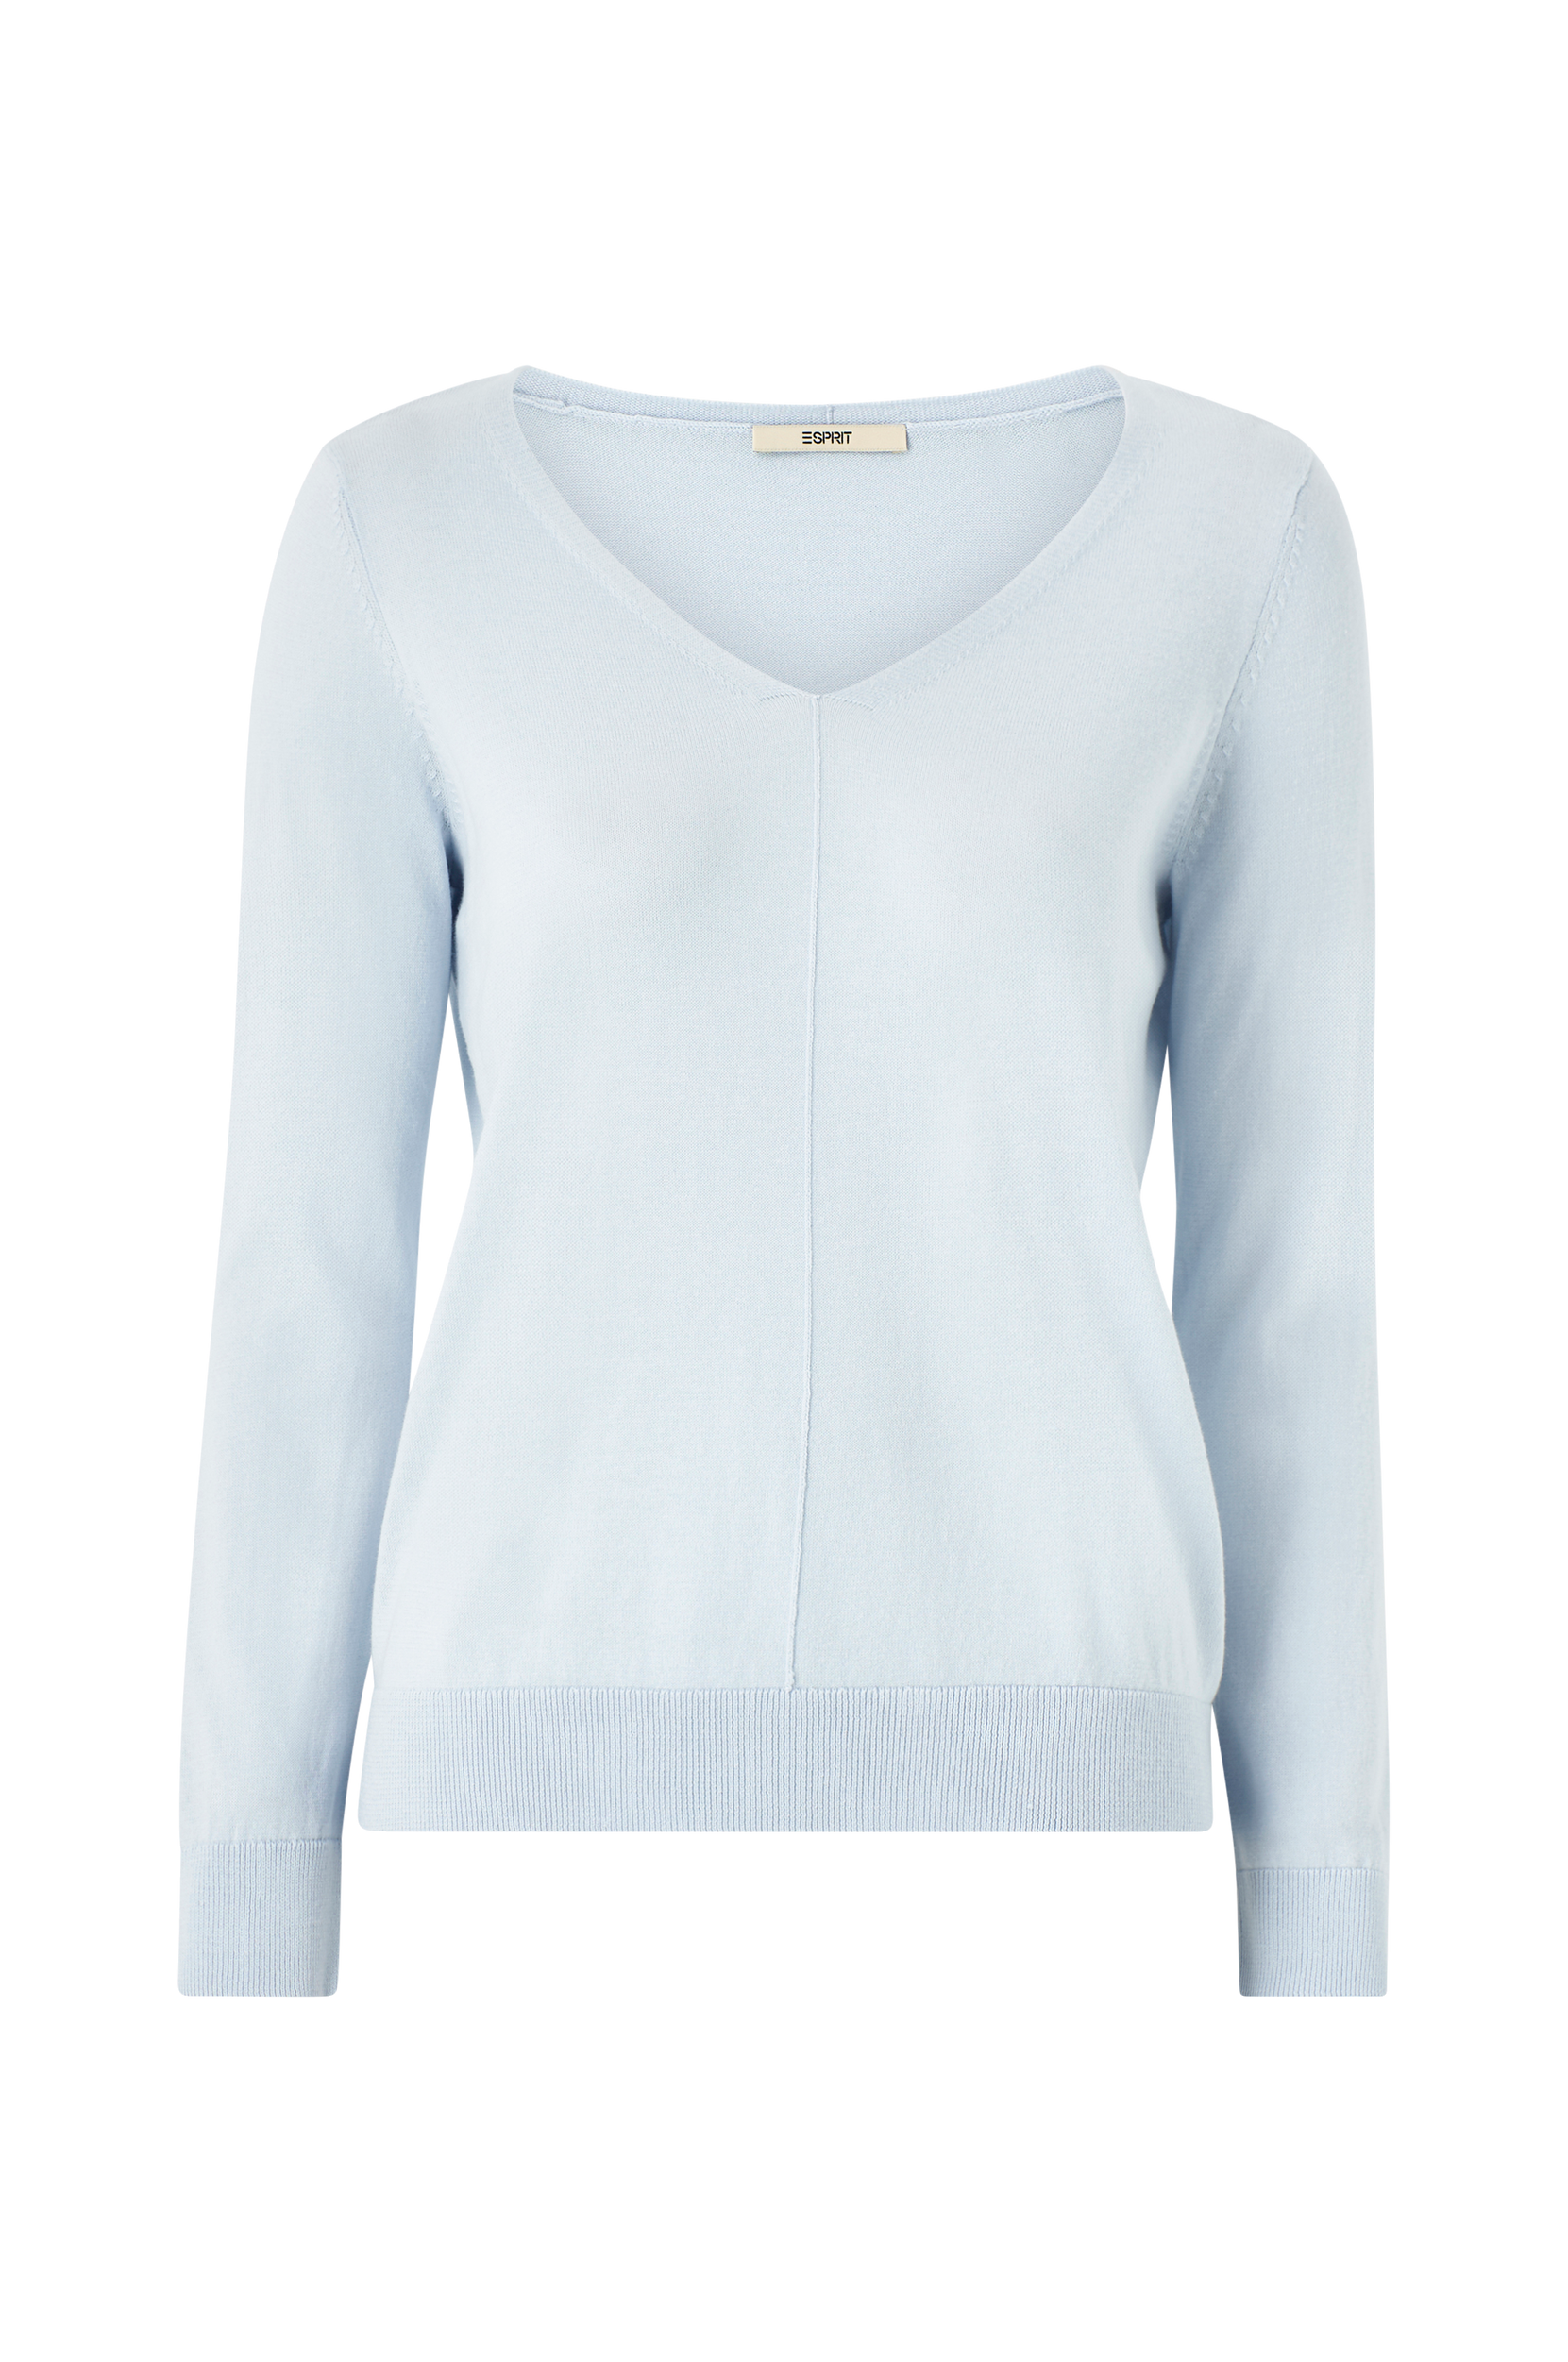 Esprit - Trøje Vn Sweater - Brun - 38 - Strik - Tøj til kvinder (29765586)